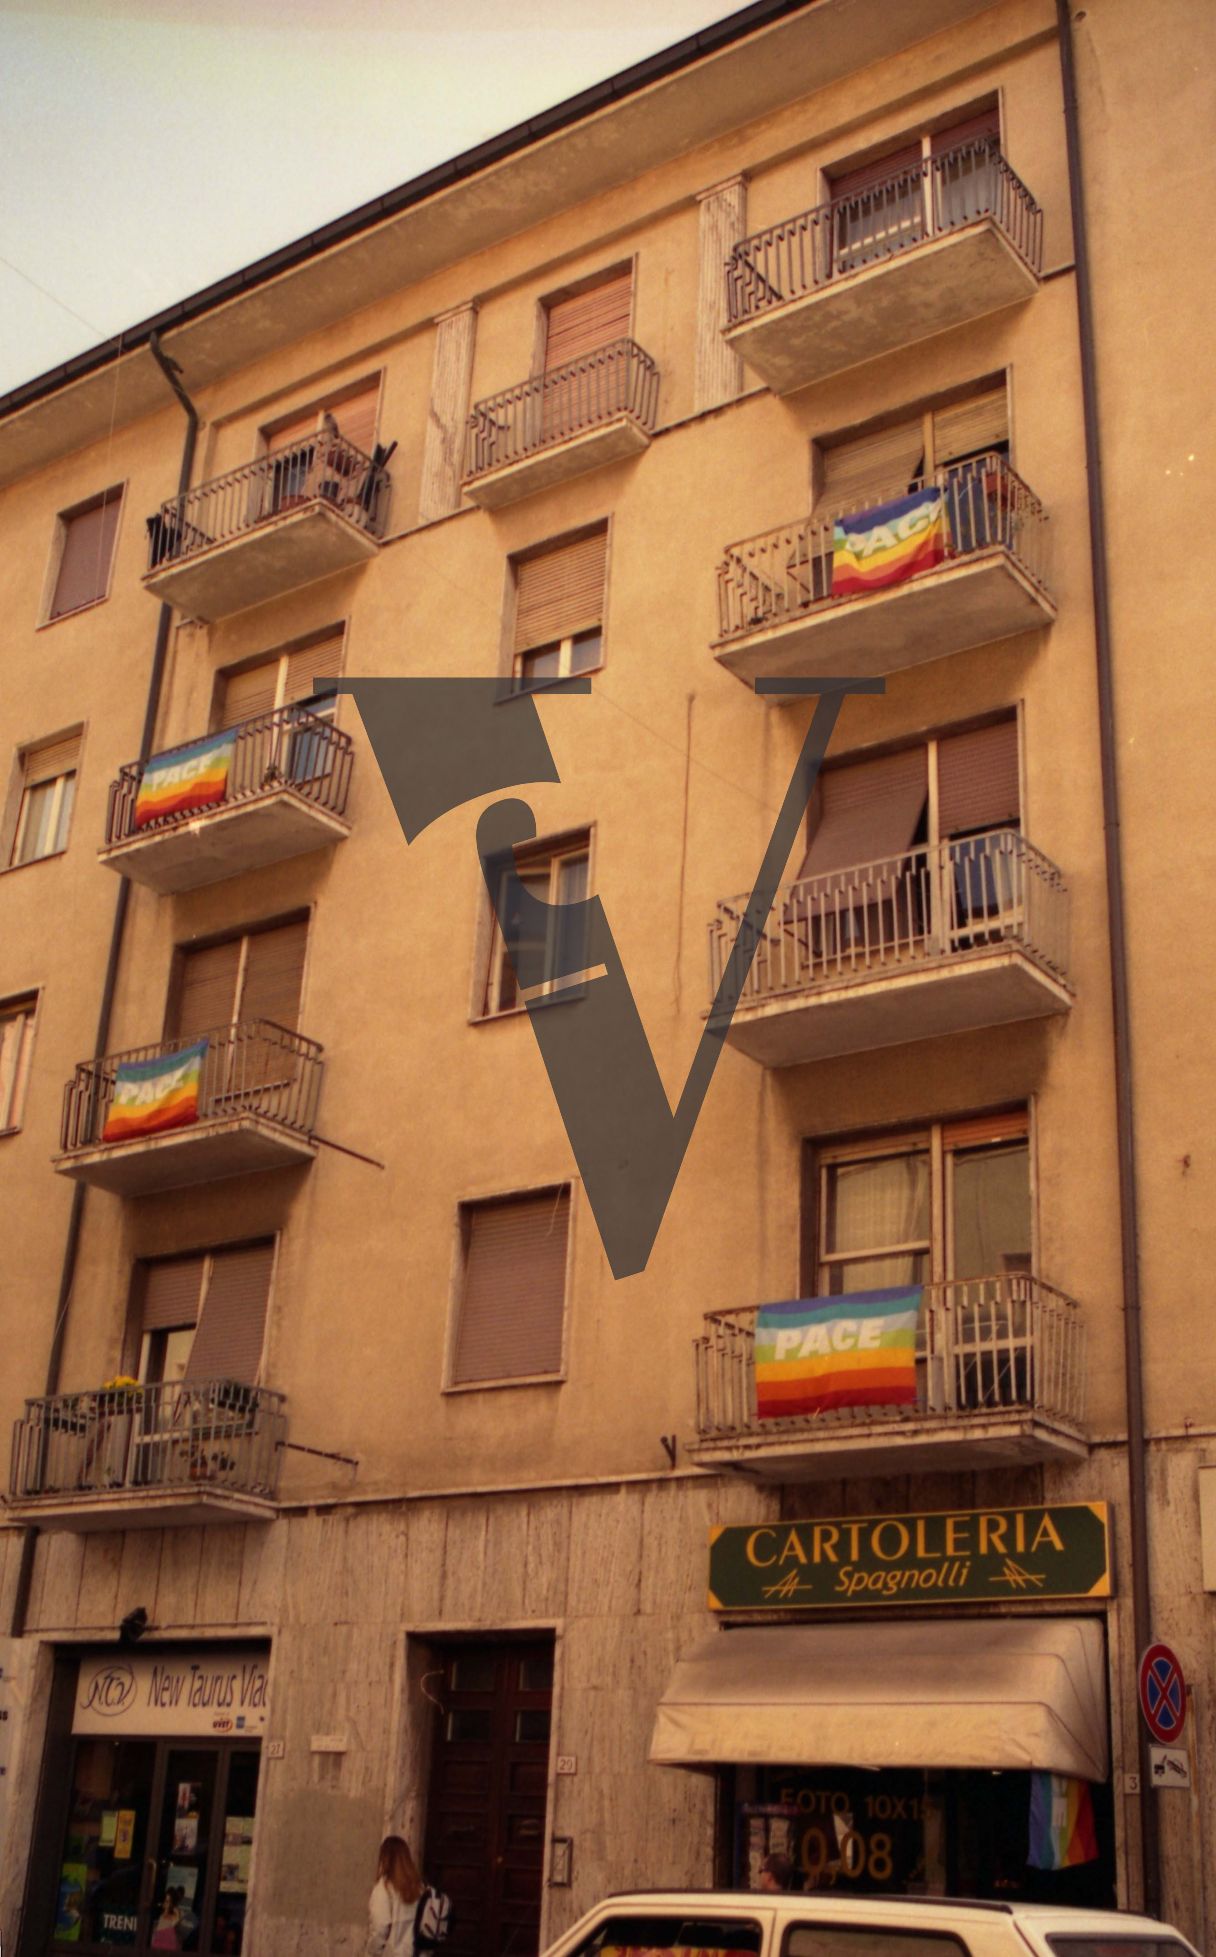 Italy, Bandiera per la Pace, Milan, balconies, Cartoleria Spagnolli.